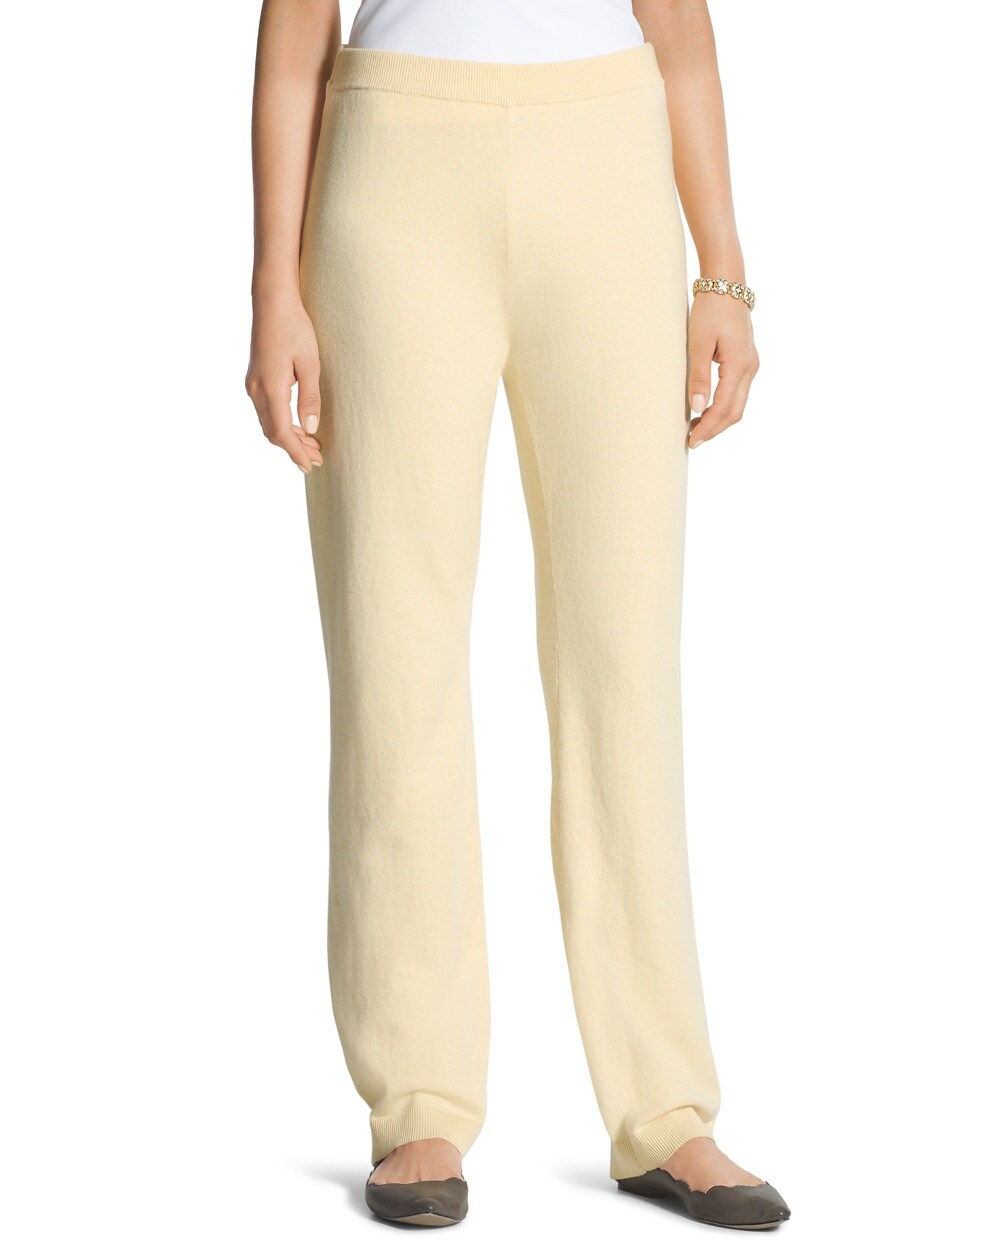 Zenergy Cotton Cashmere Pants